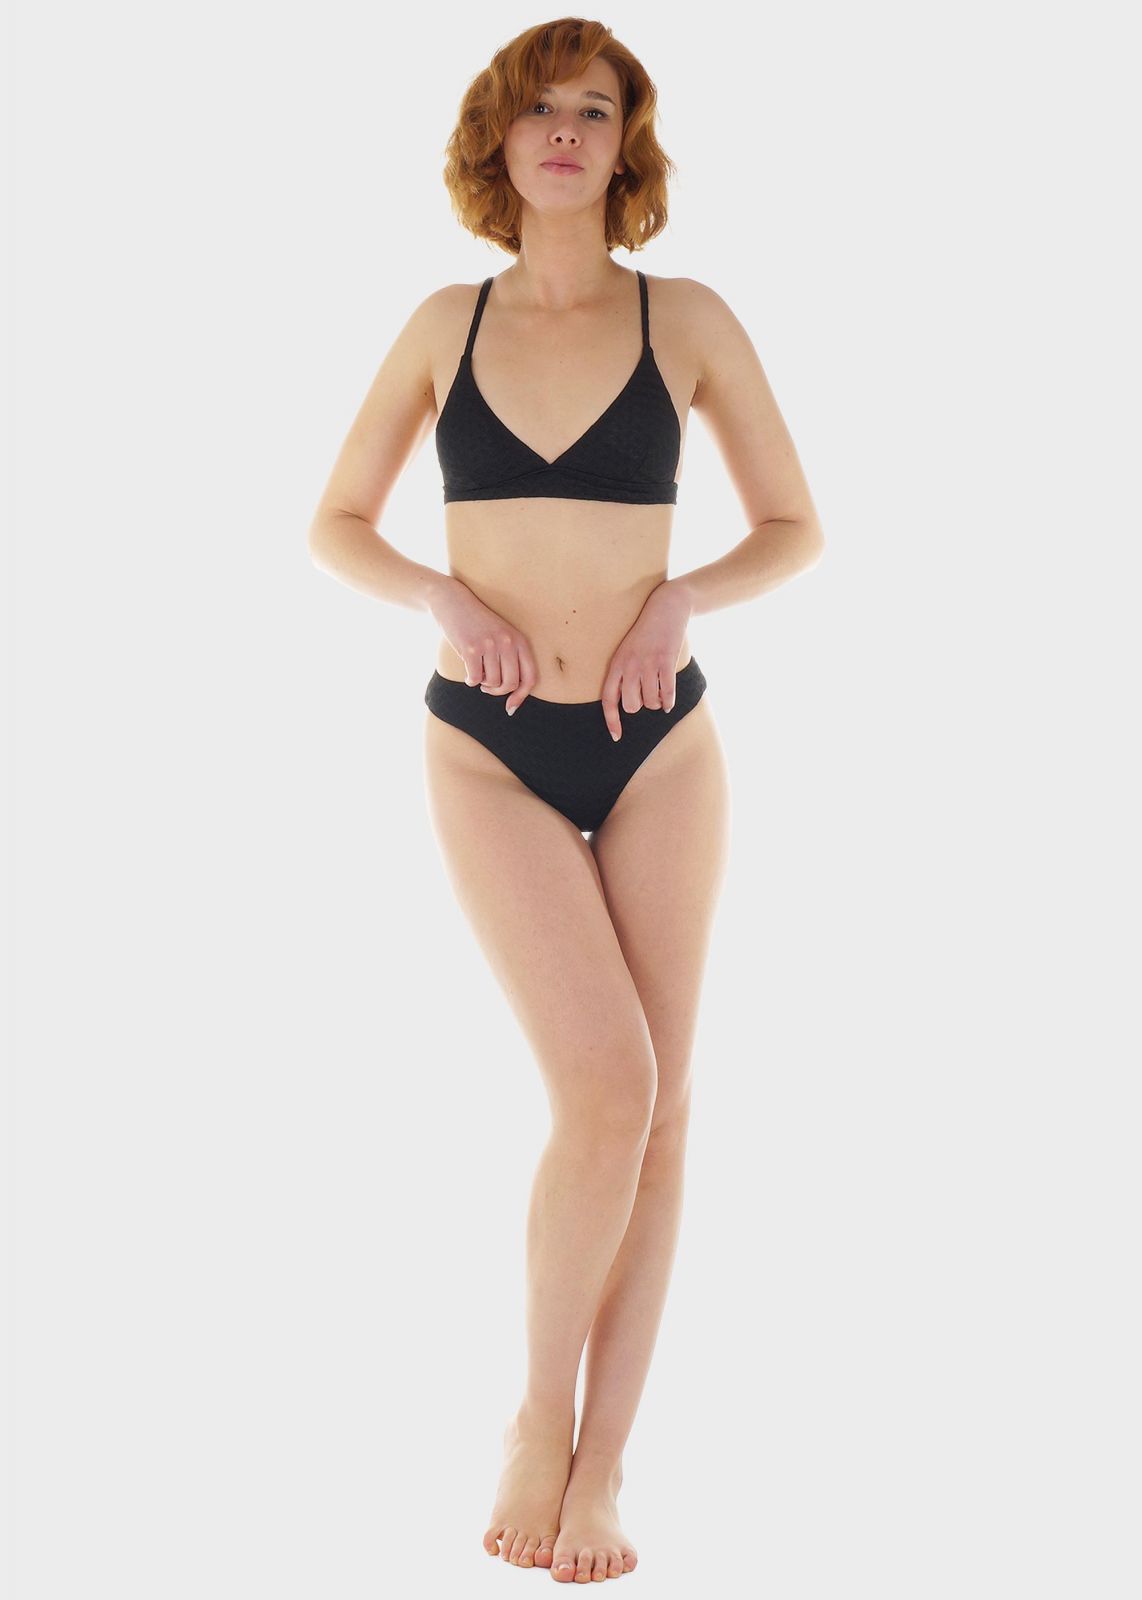 Γυναικείο σετ μαγιό bikini μονόχρωμο αποσπώμενη επένδυση slip κανονική γραμμή.Καλύπτει B Cup ΜΑΥΡΟ